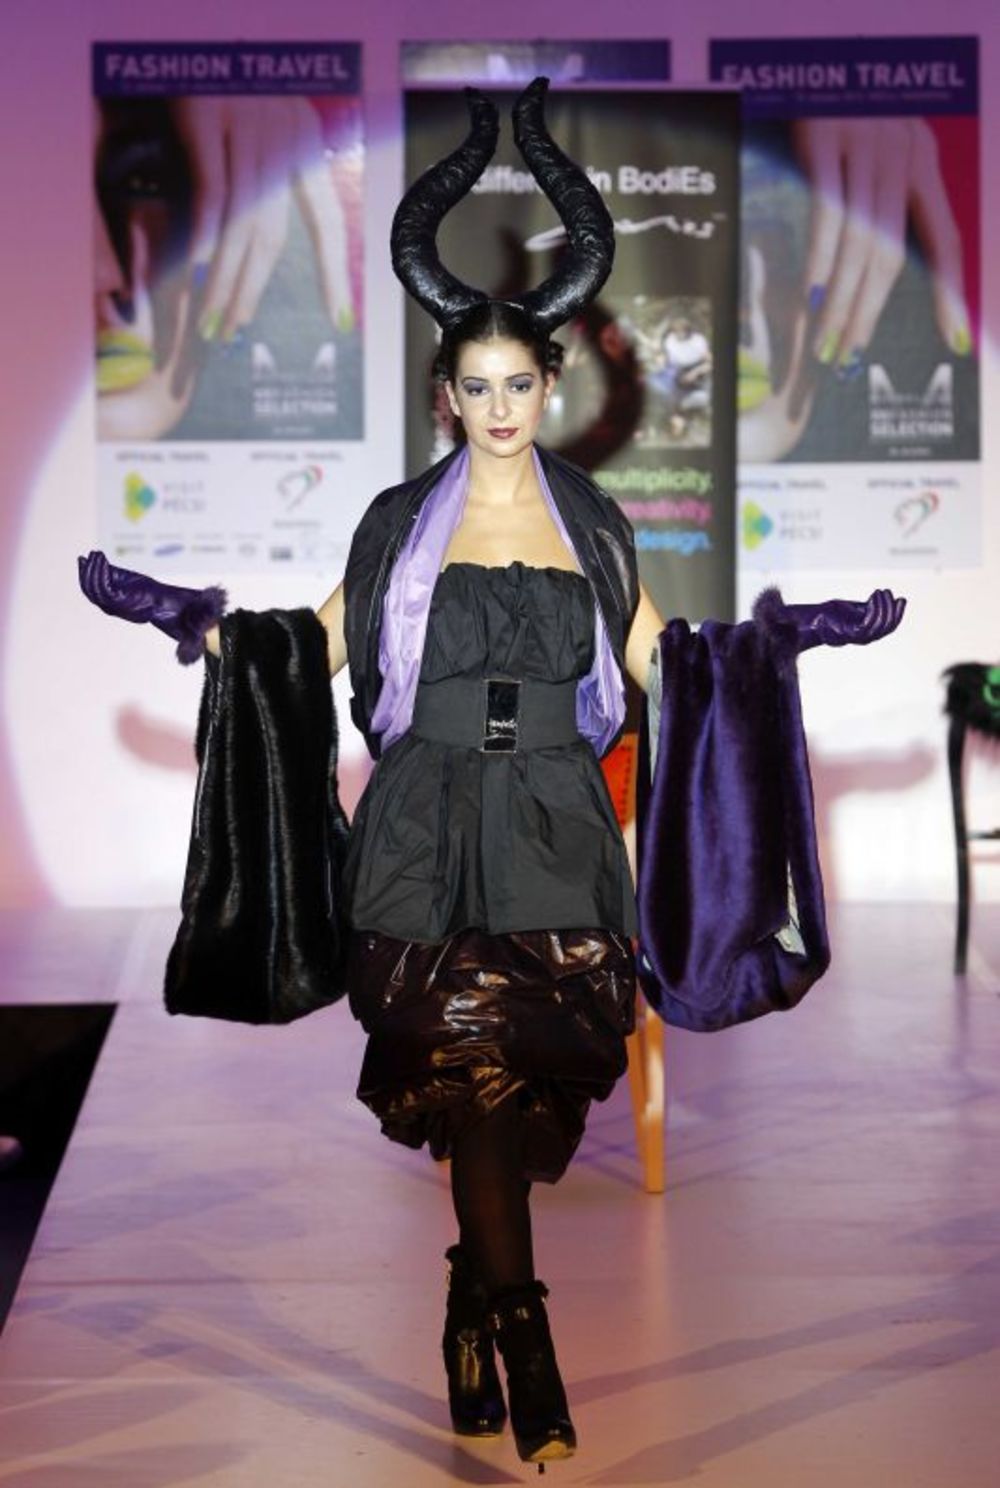 U okviru 21. Maybelline Fashion Selectiona u prelepom mađarskom gradu Pečuju održan je Fashion Travel, na kome su se predstavile modna kuća Allegra i mađarska dizajnerka Ester Bodi. U fantastičnom ambijentu Žolnaj kulturnog kvarta u Pečuju, modna kuća Allegra